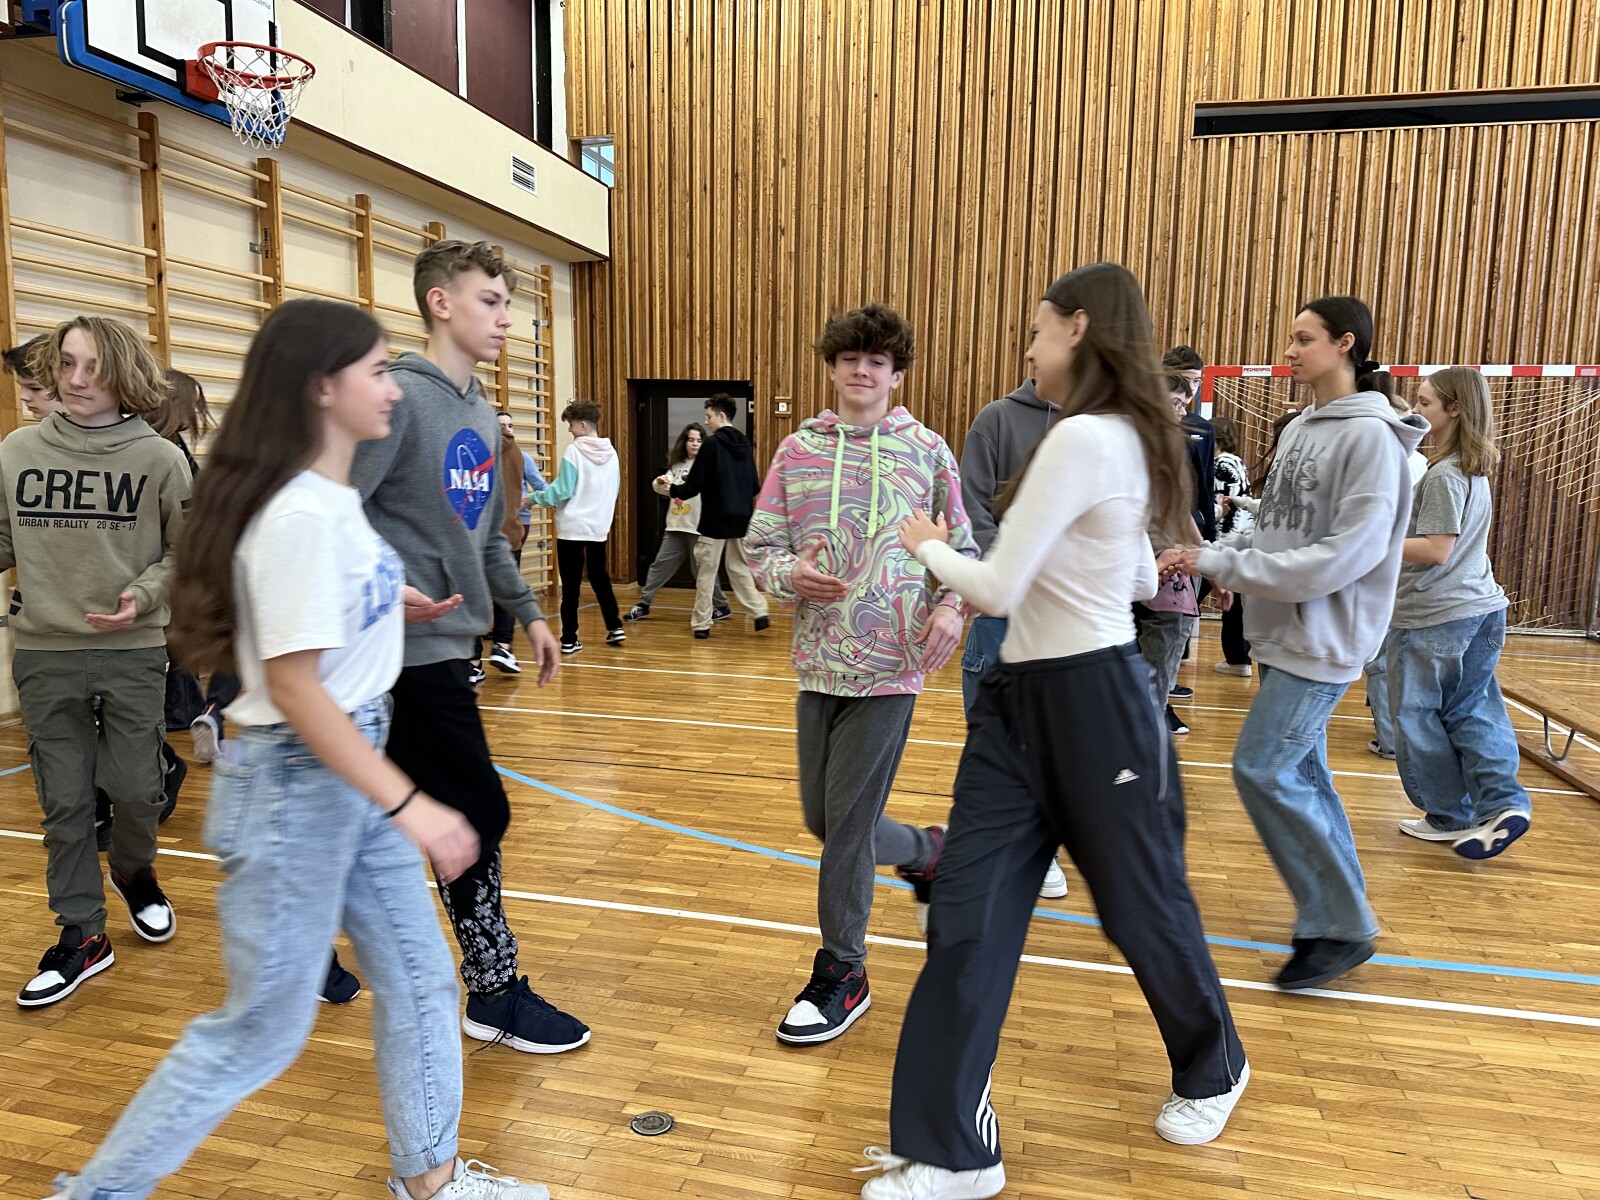 Uczniowie podczas tańca w sali gimnastycznej.